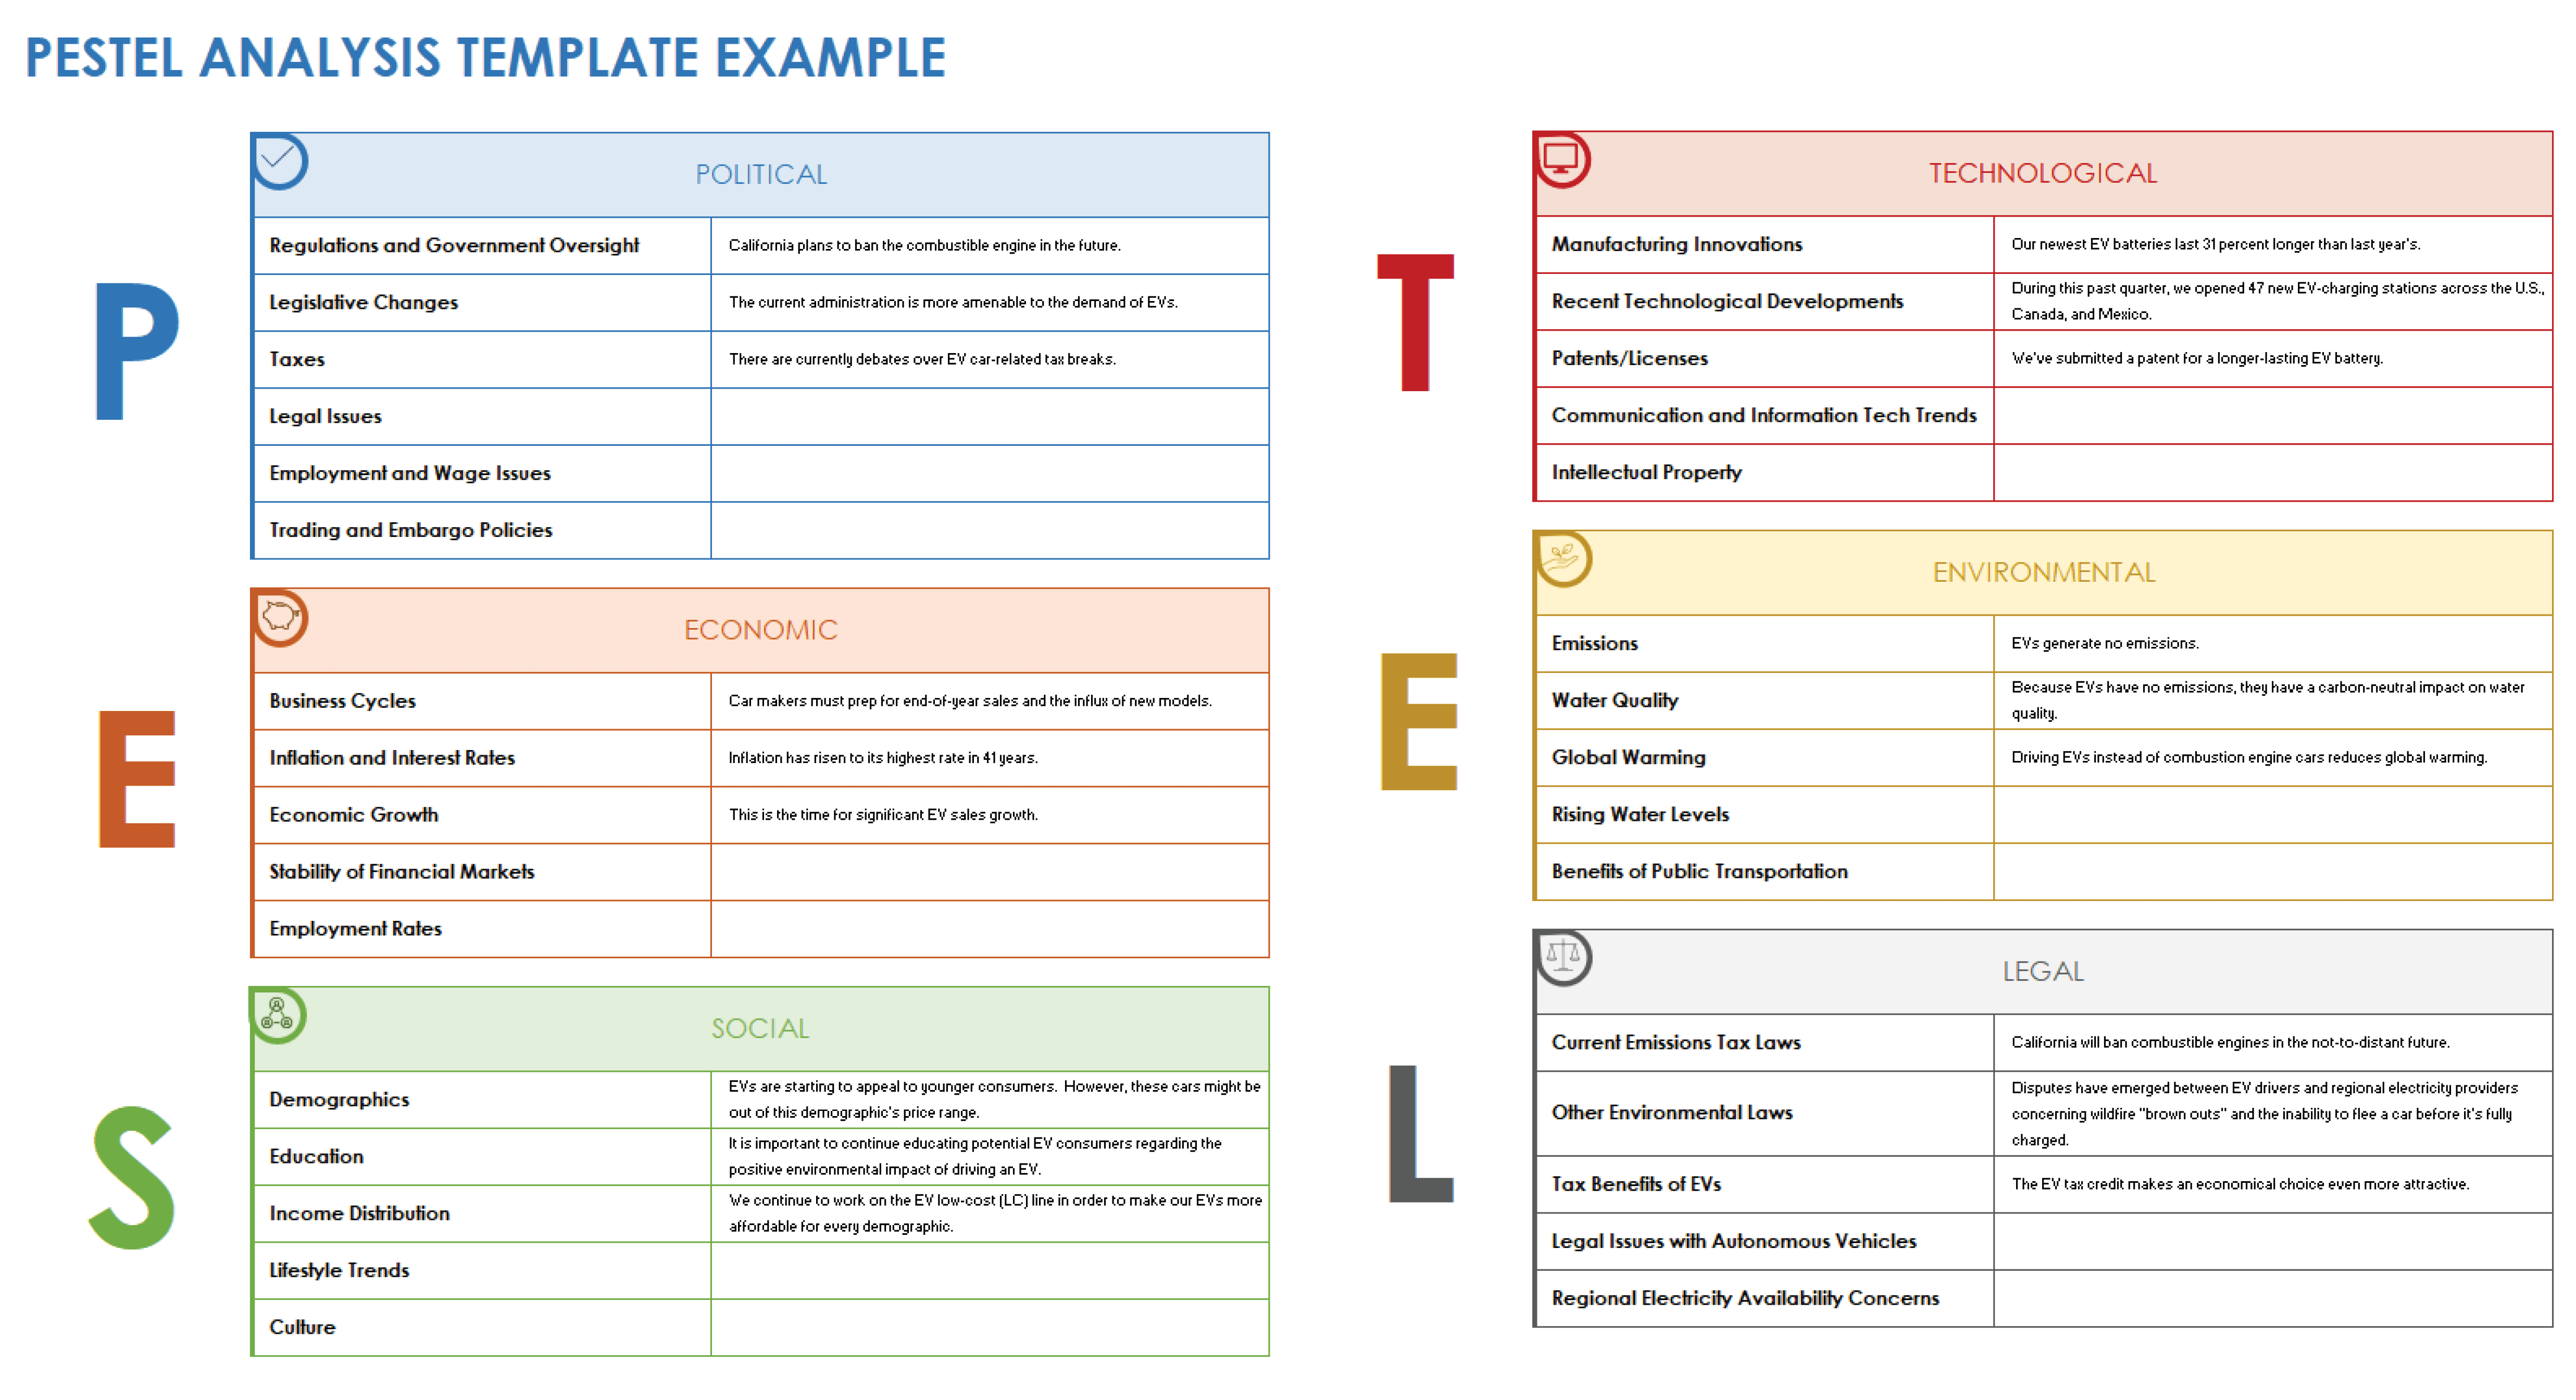 PESTEL Analysis Example Template